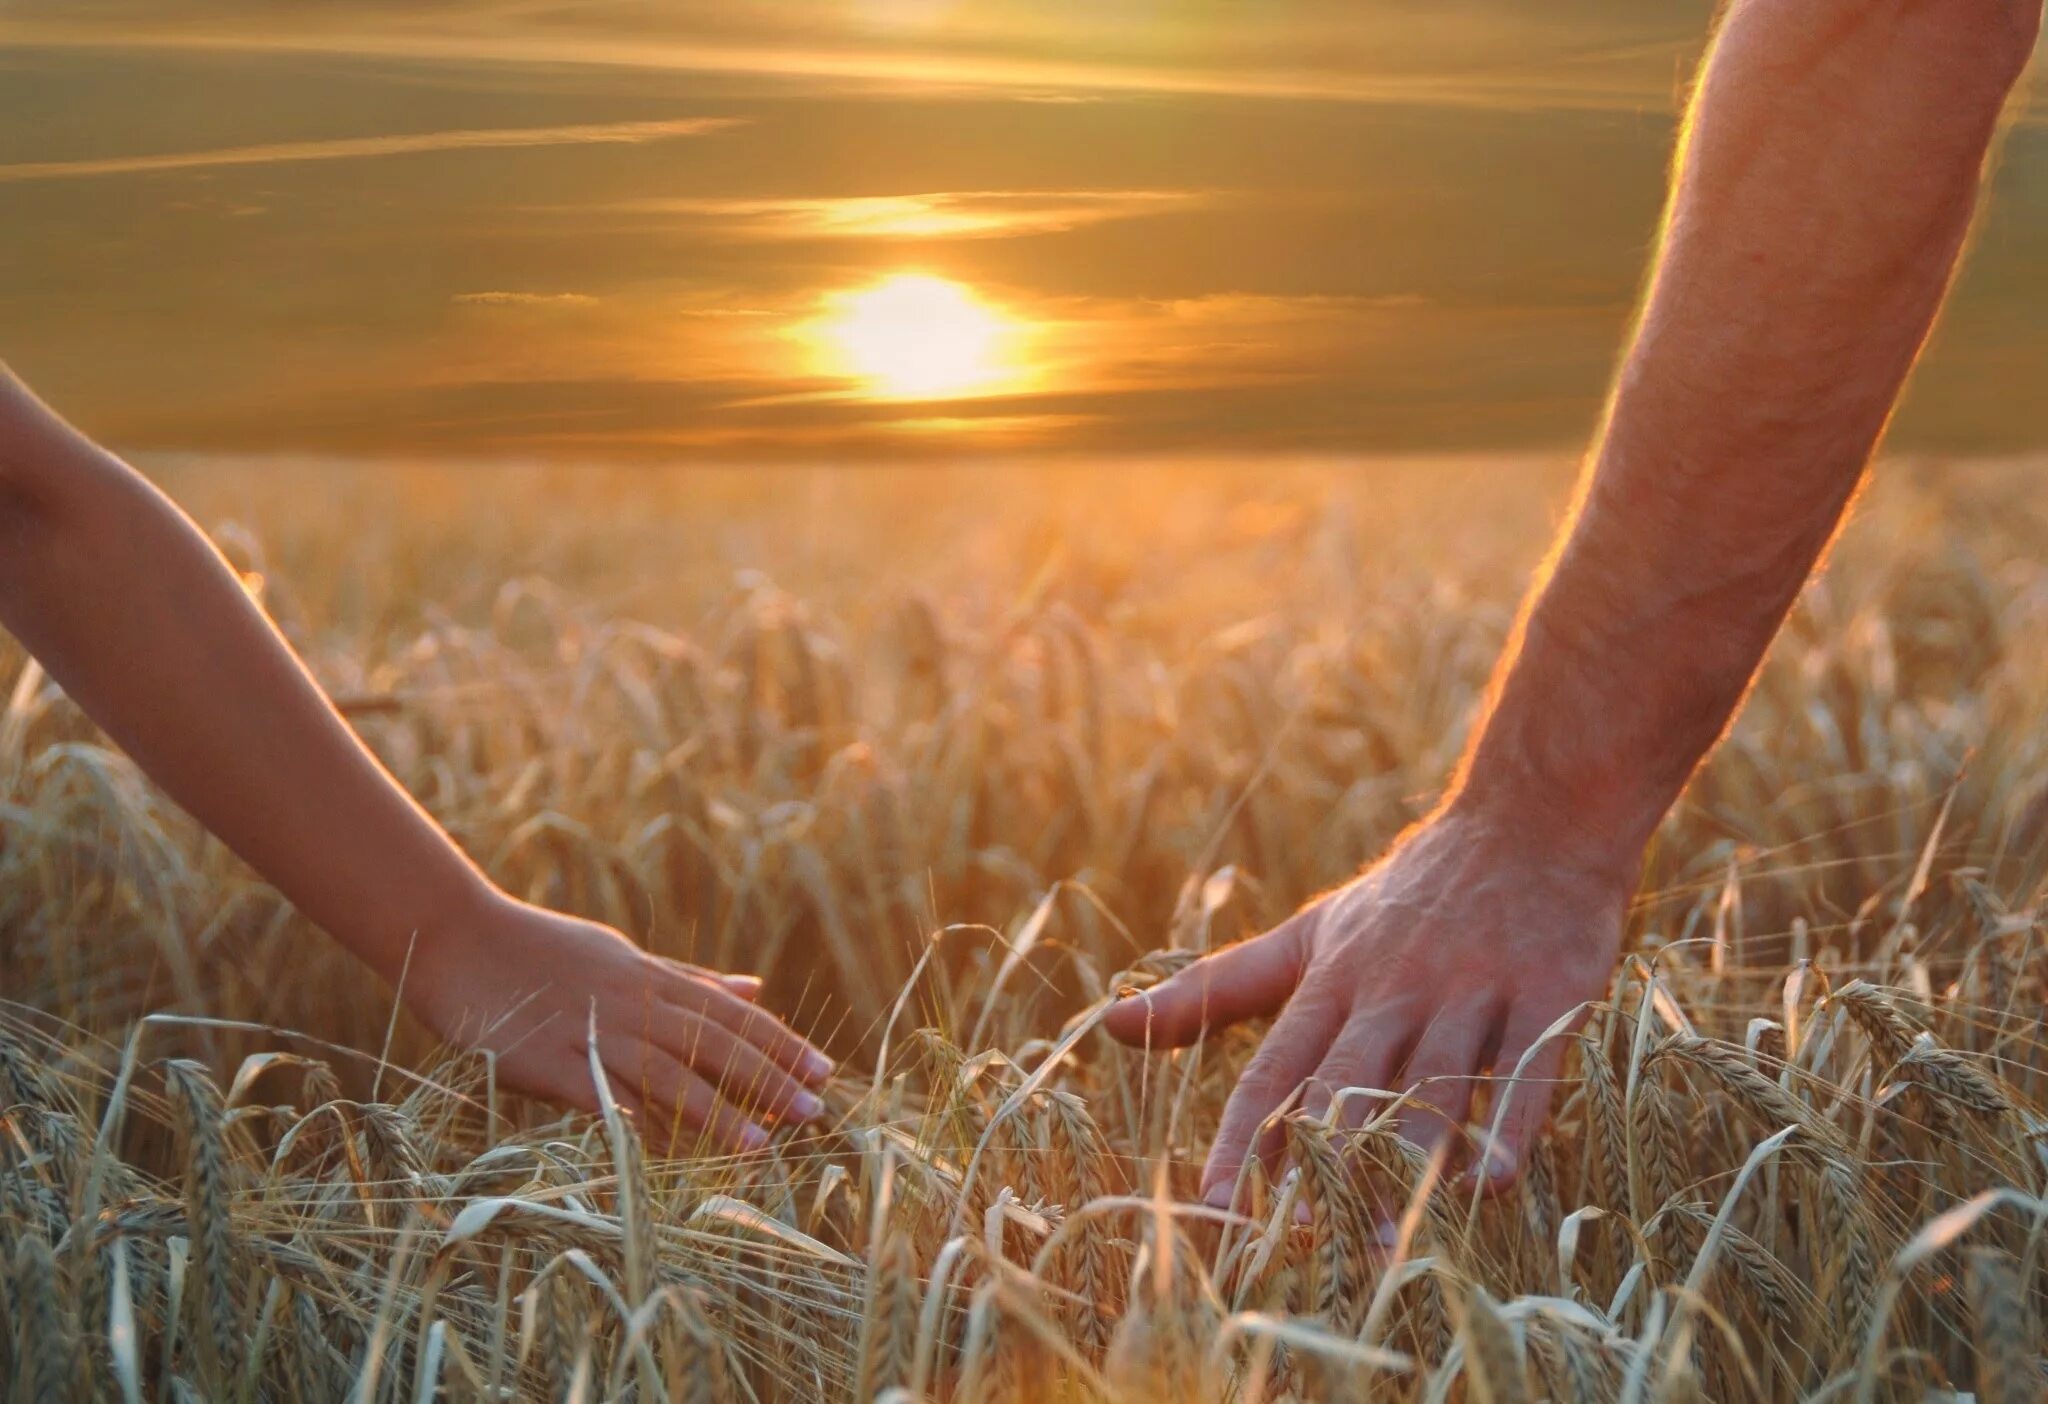 Все могло было быть. Берегите друг друга. Пшеничное поле человек. Берегите друг друга любите. Любите цените и берегите друг друга.